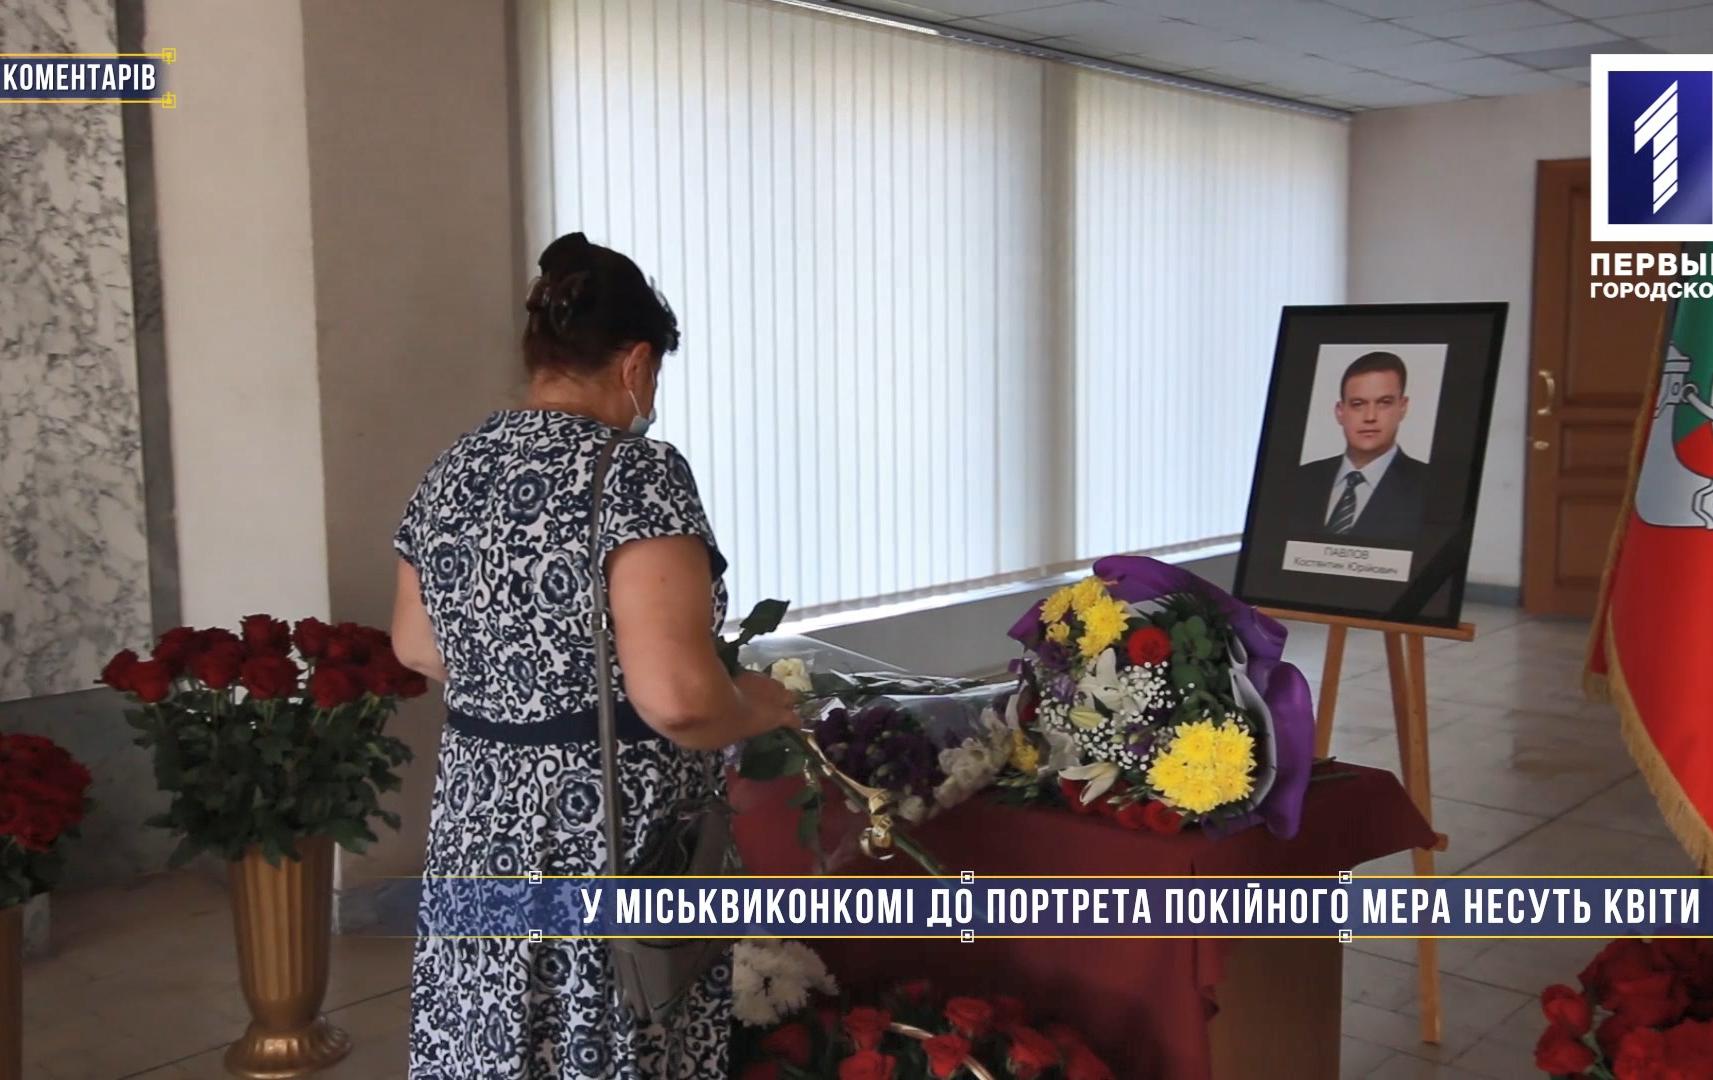 Без коментарів: у міськвиконком Кривого Рогу несуть квіти до портрета покійного мера